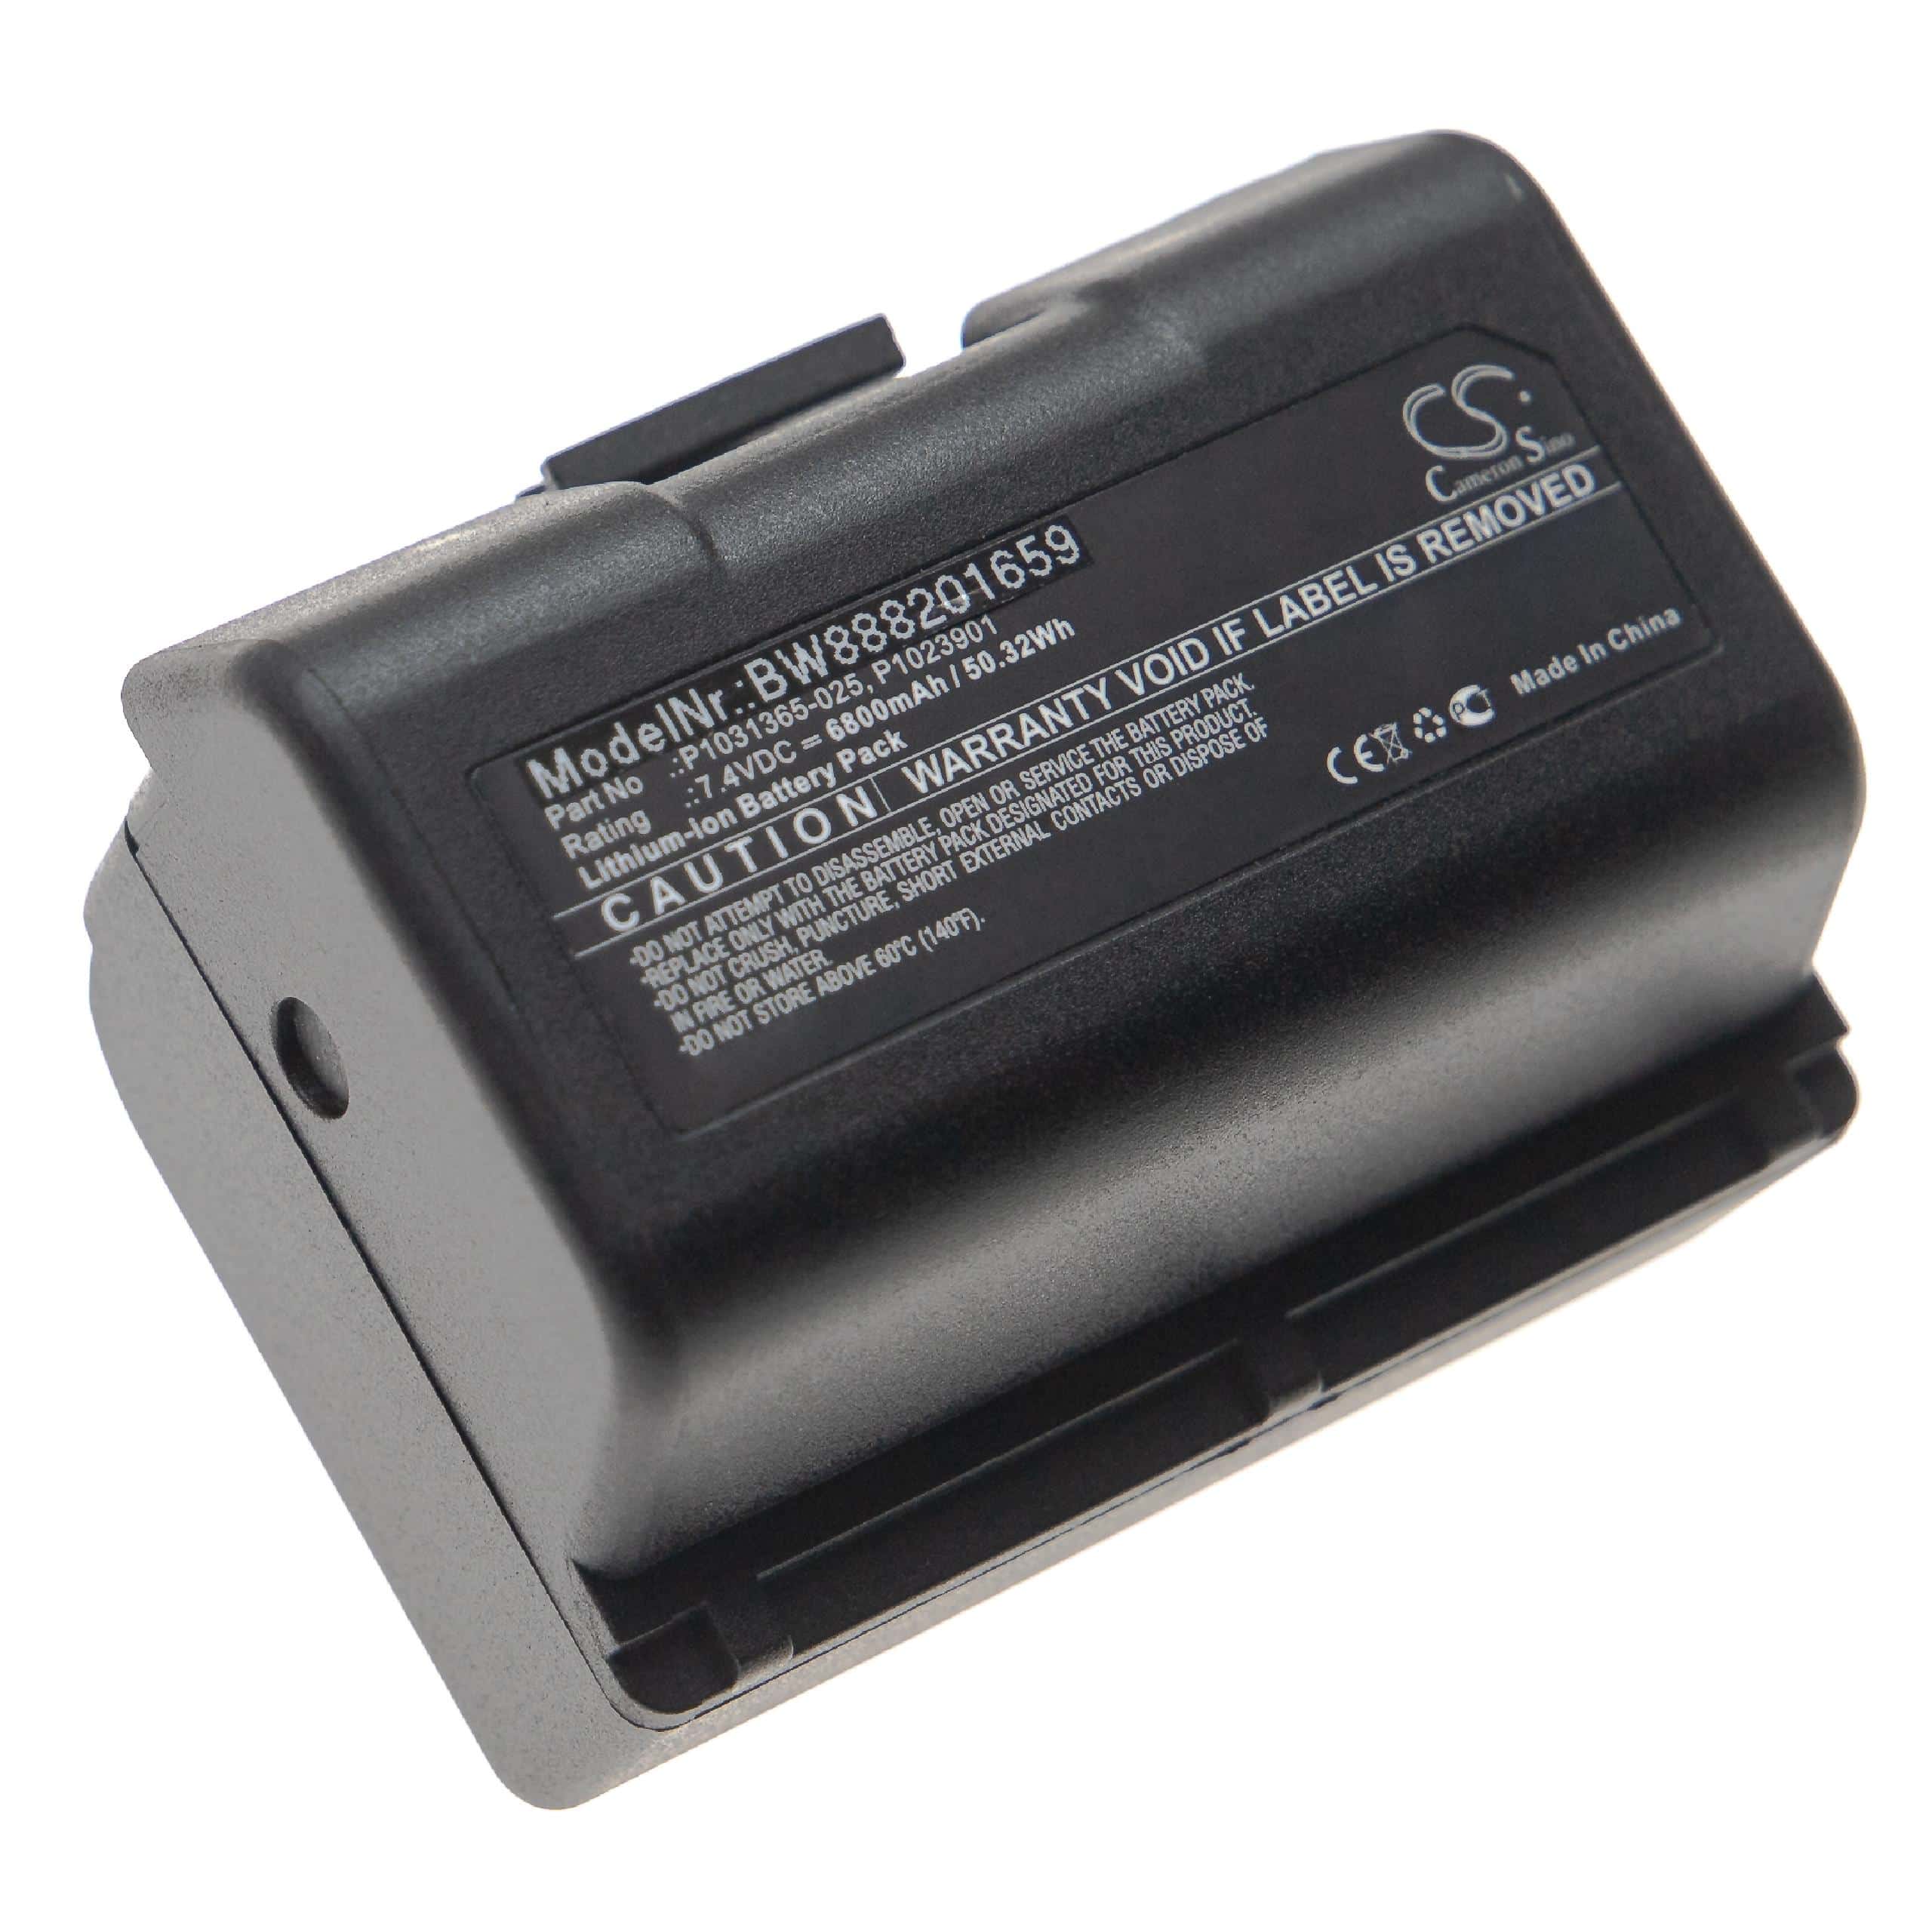 Akumulator do drukarki / drukarki etykiet zamiennik Zebra AT16004, BTRY-MPP-34MA1-01 - 6800 mAh 7,4 V Li-Ion